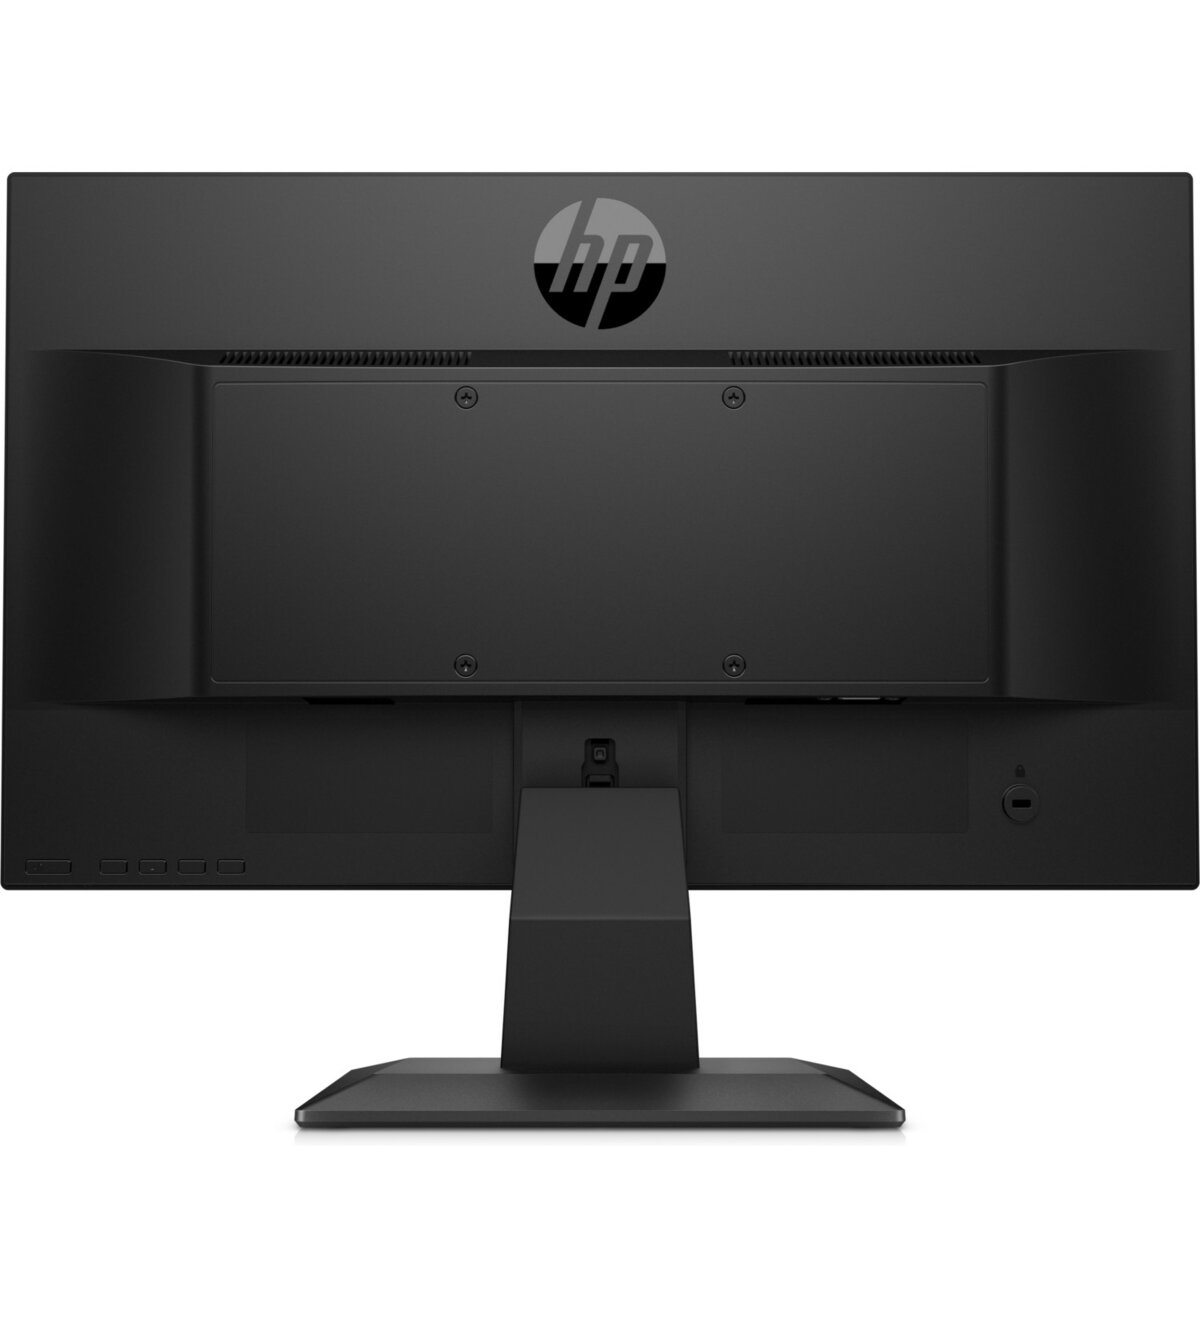 HP P204 Monitor